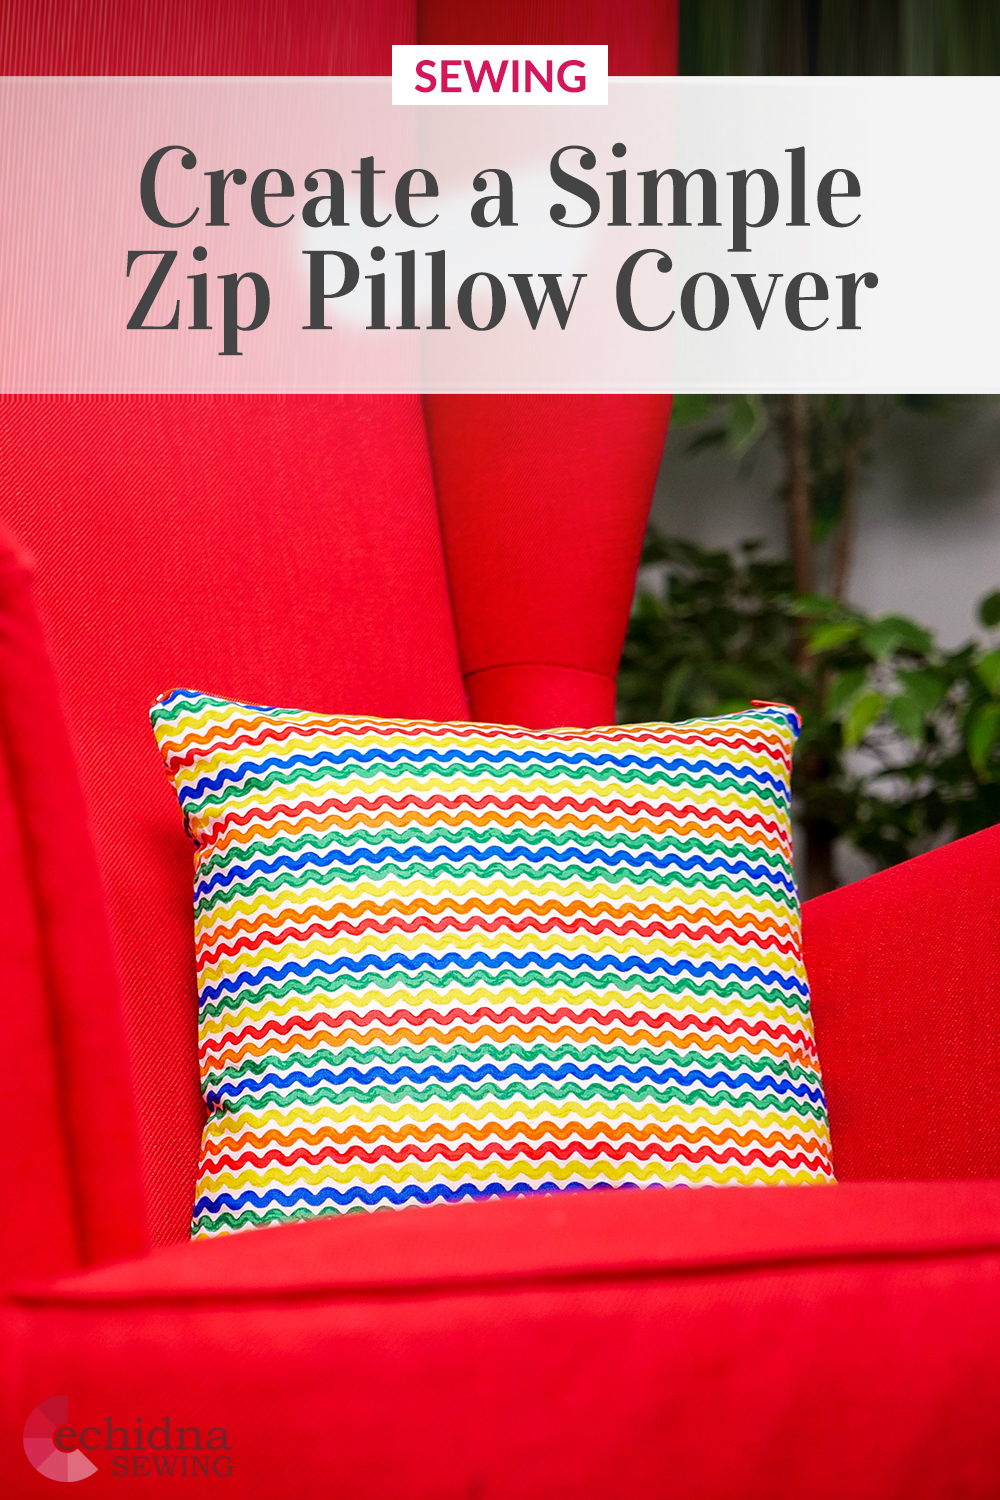 Zip Pillow Case Pinterest